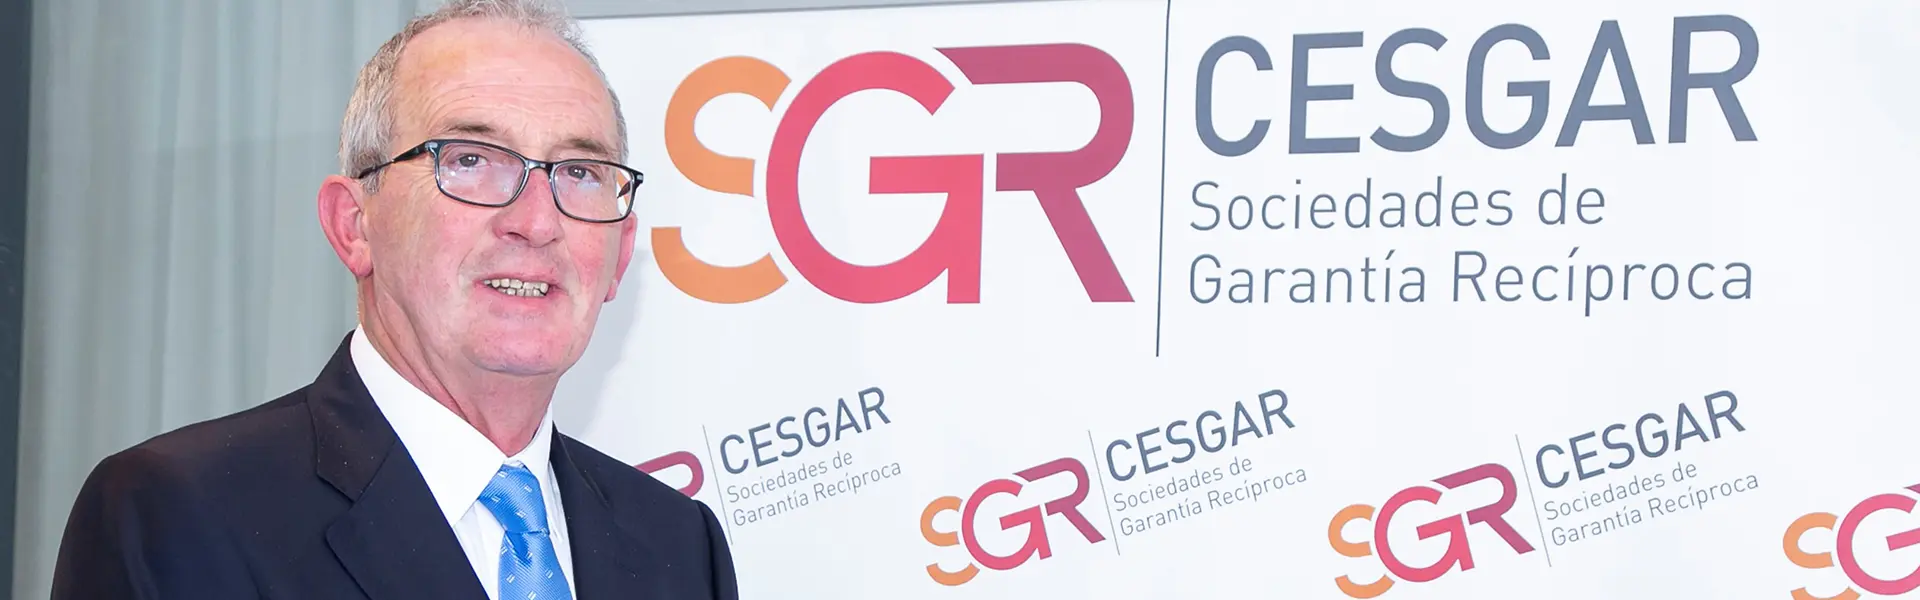 Entrevista a Jose Pedro Salcedo Herce presidente de Cesgar ultimas noticias